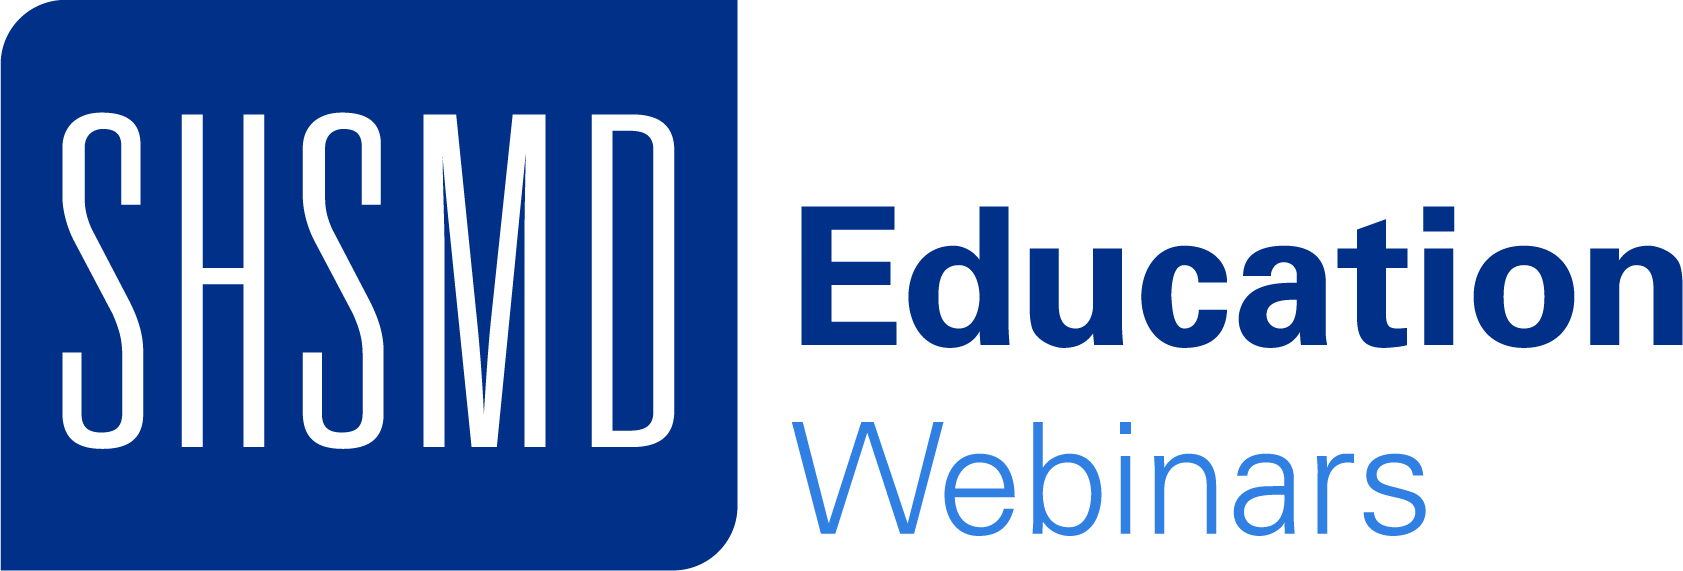 SHSMD education webinars logo